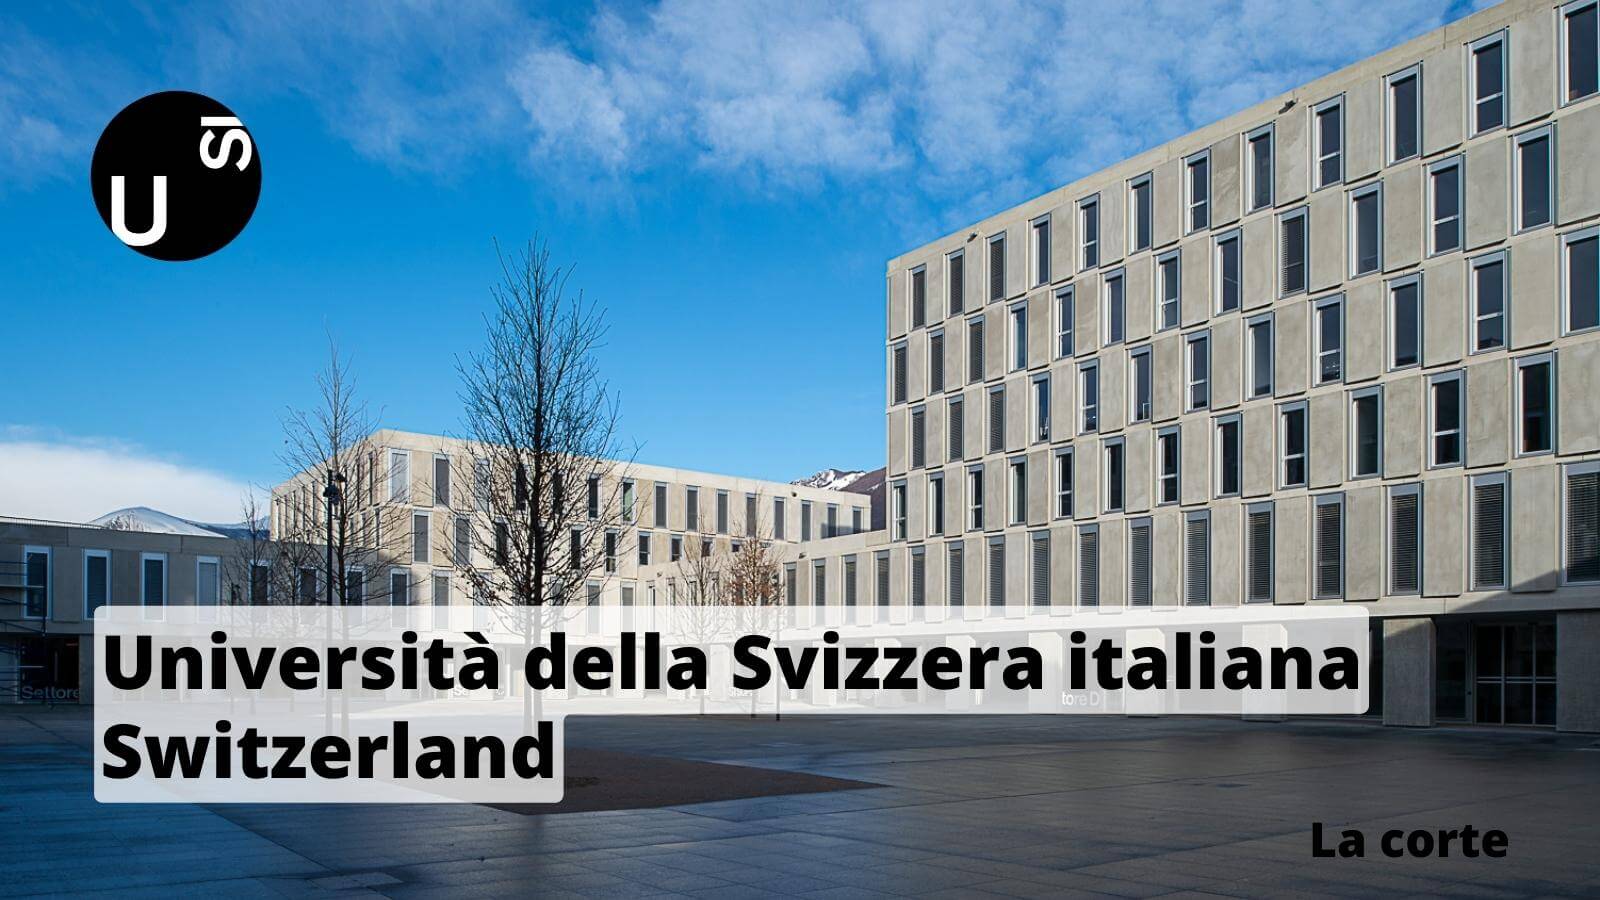 La corte Università della Svizzera italiana USI Switzerland